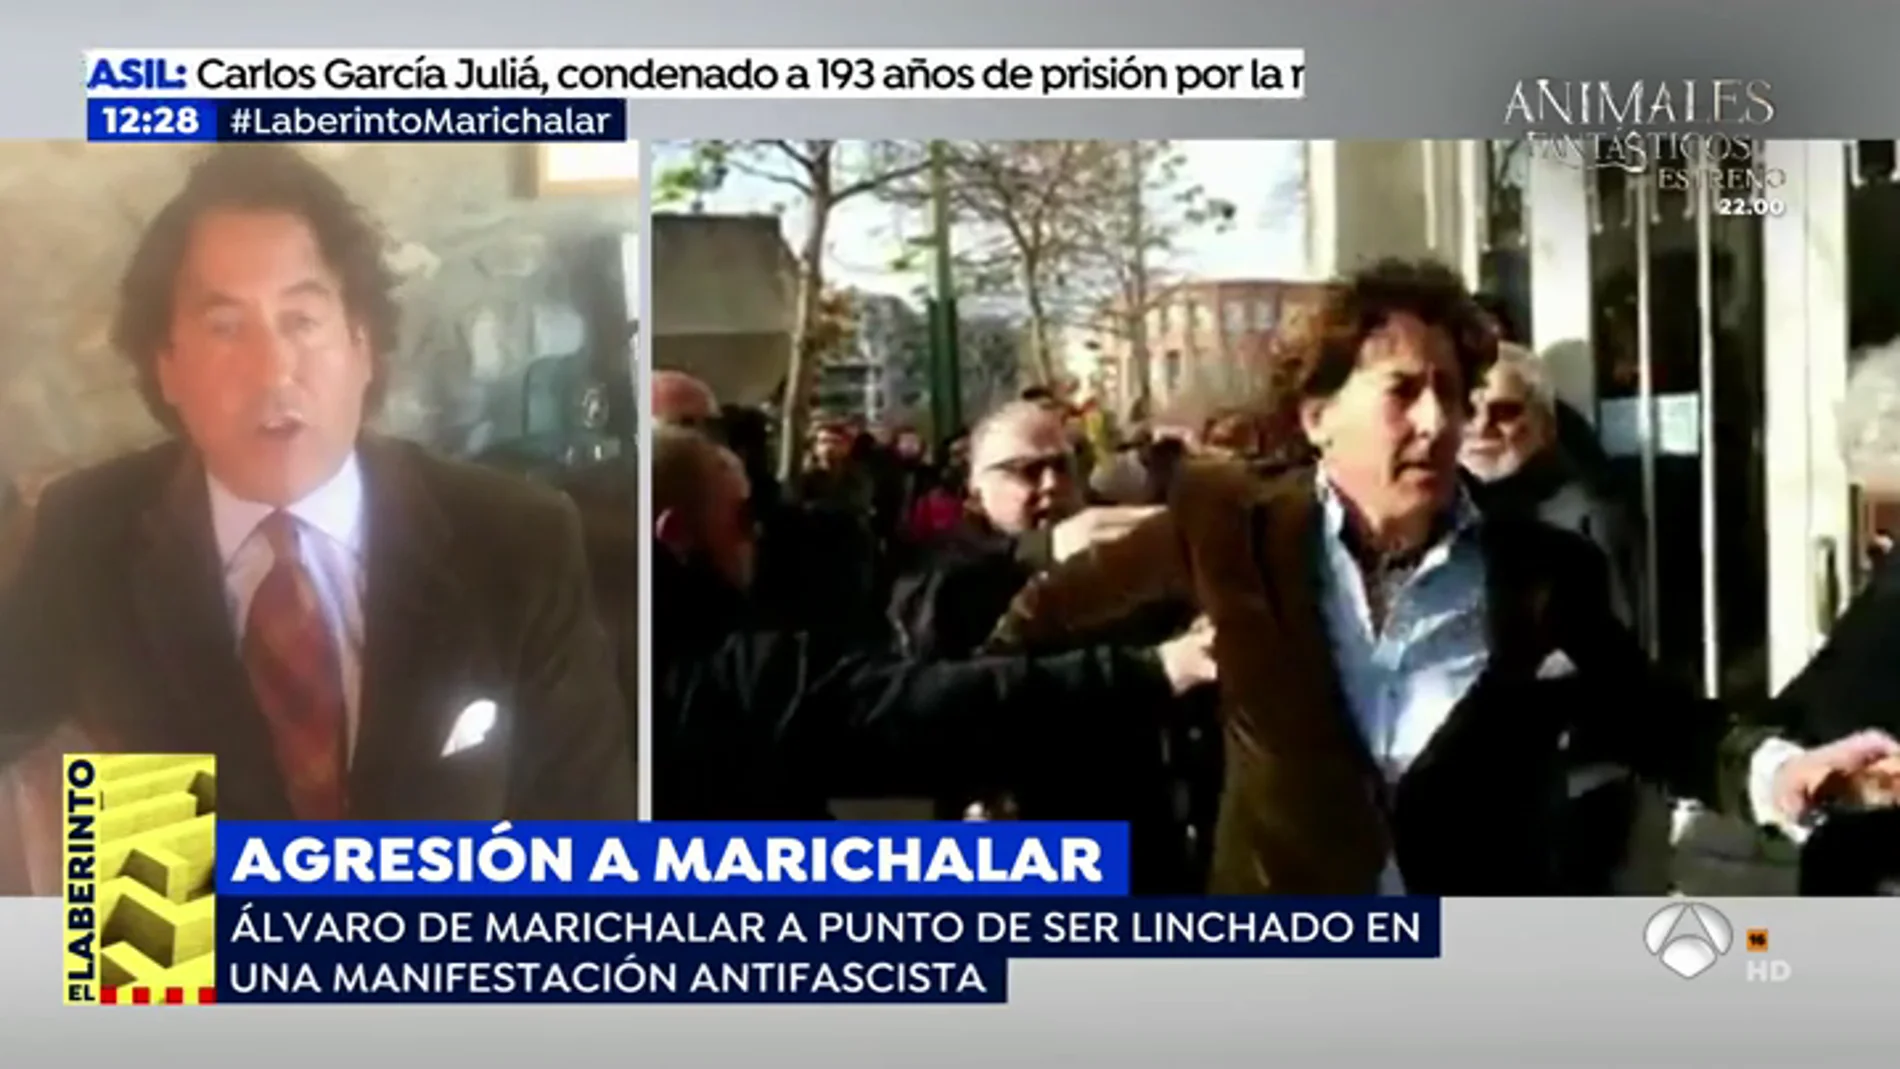 La impactante agresión de un grupo de antifascistas a Álvaro de Marichalar: "Me insultaron, me tiraron al suelo y me patearon"